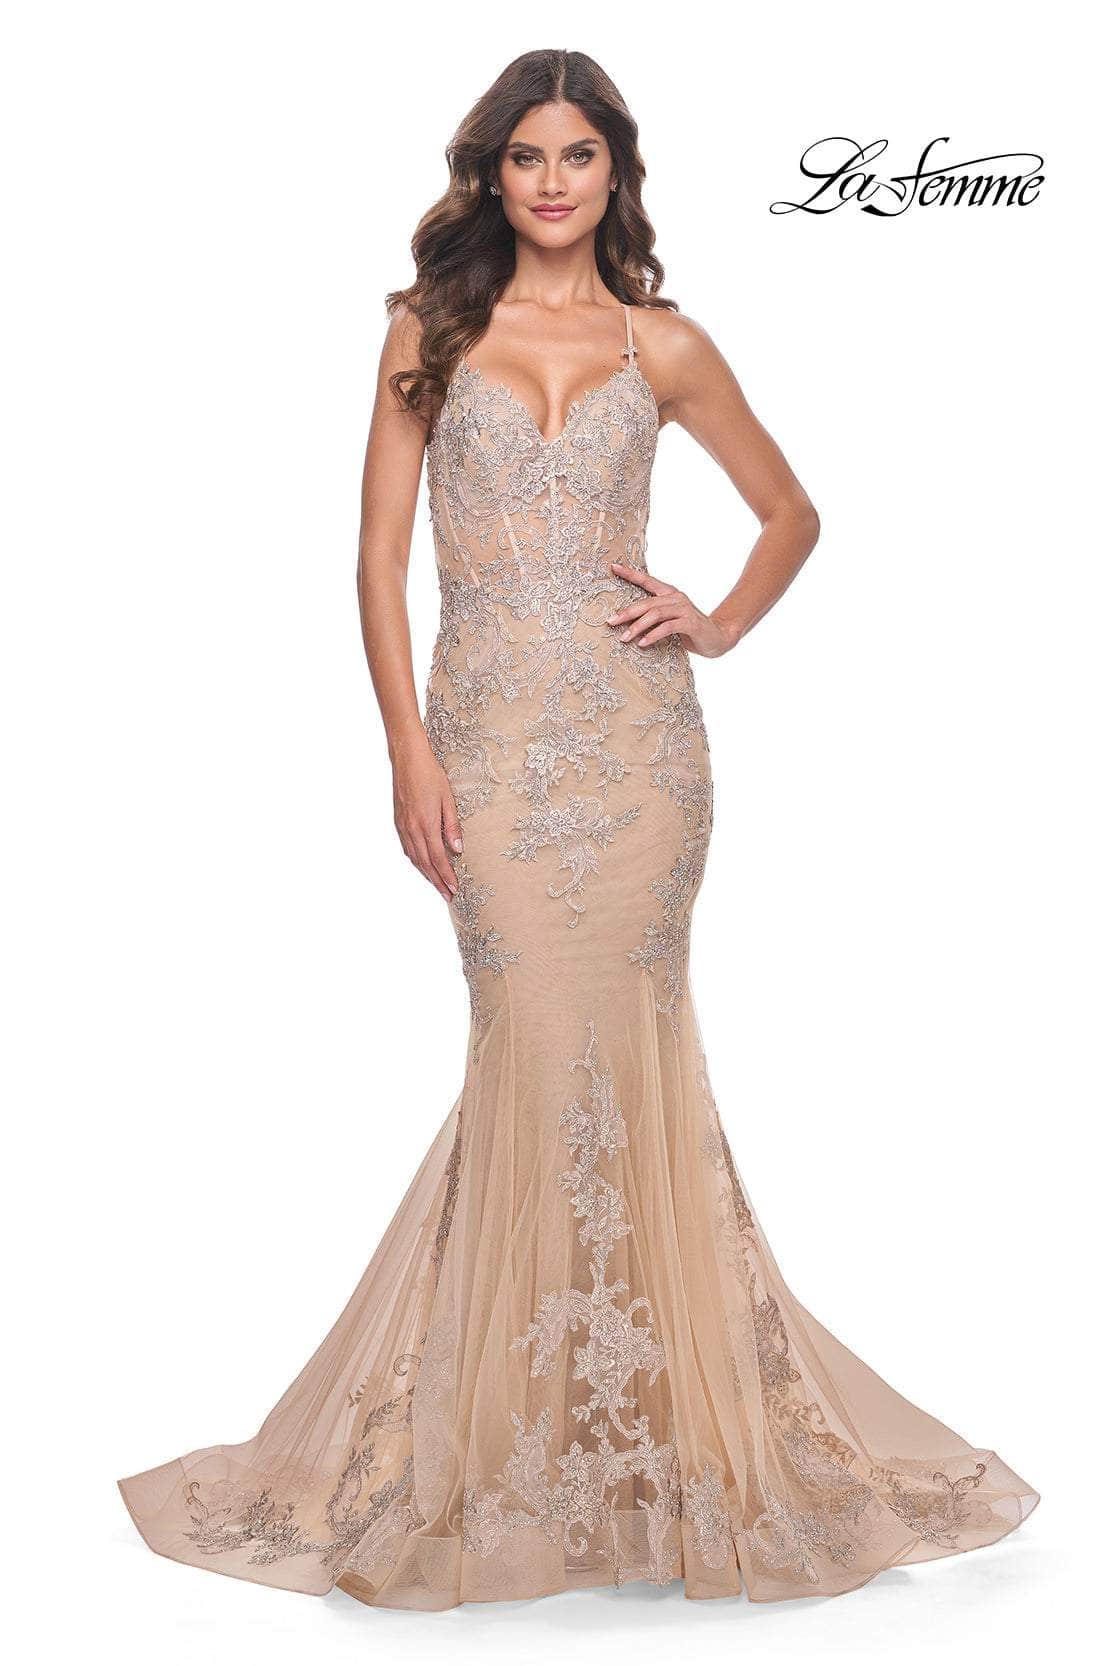 La Femme 30716 - Adjustable Strap Appliqued Prom Gown
